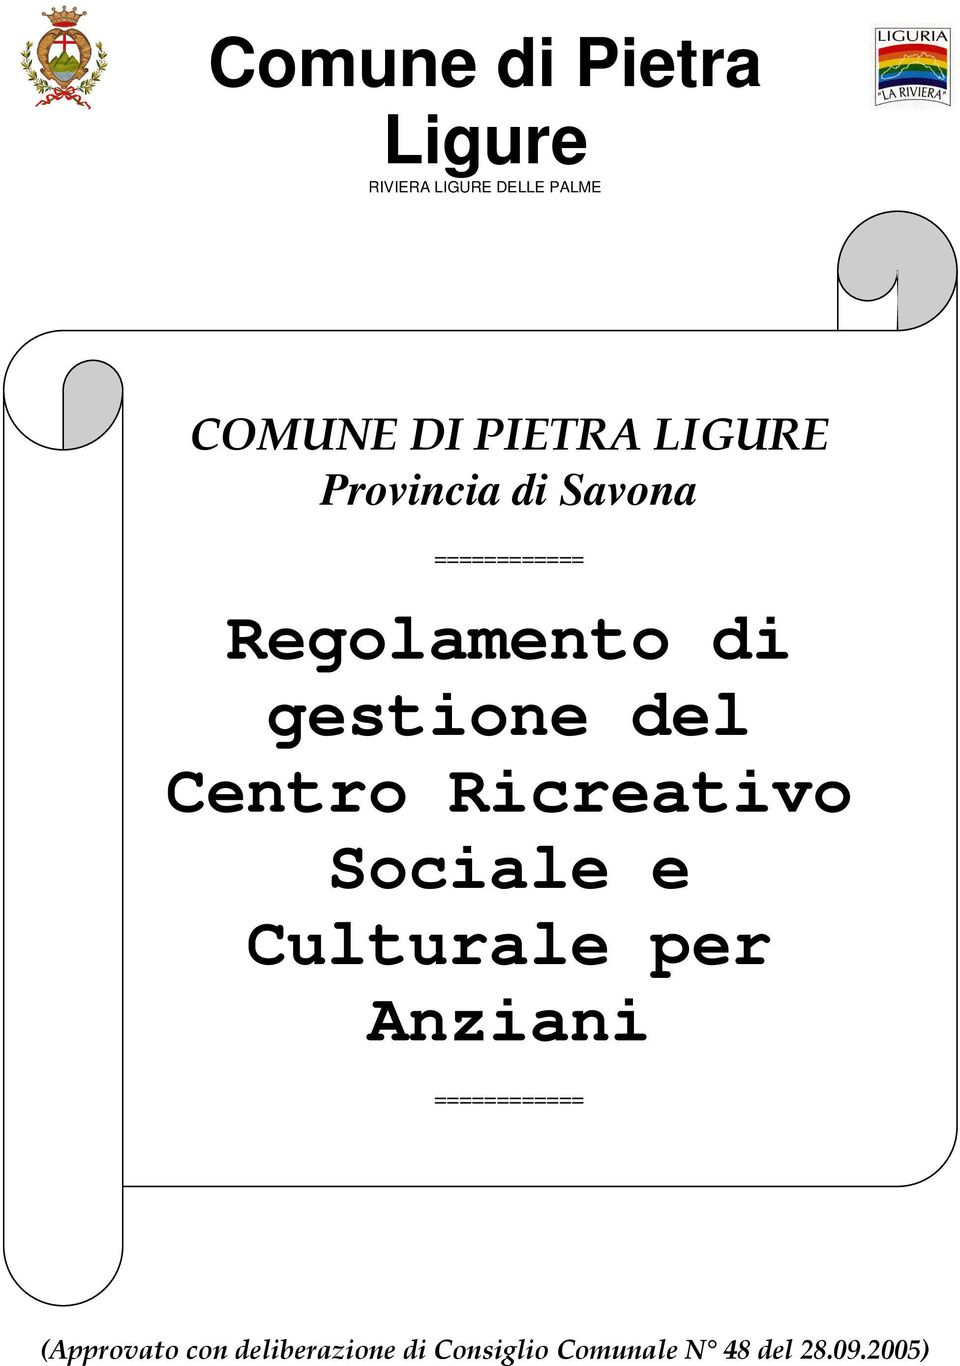 Centro Ricreativo Sociale e Culturale per Anziani ============